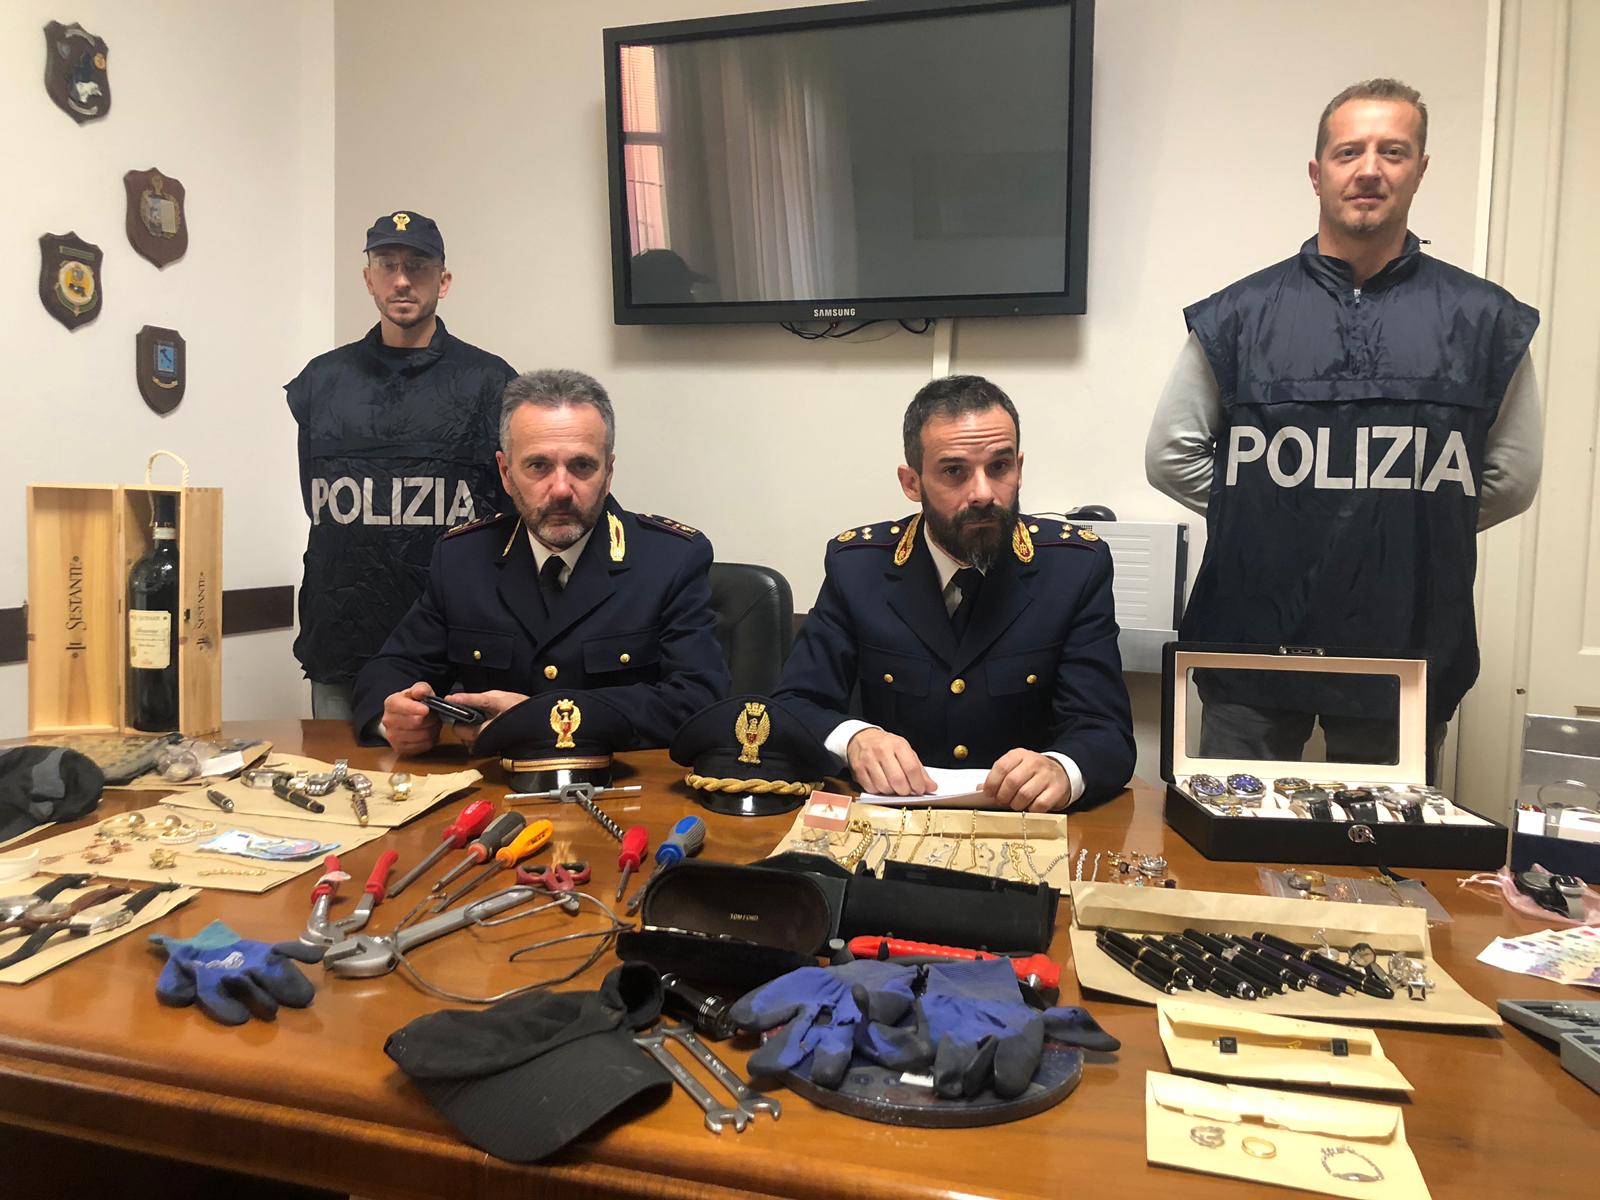 Furti in abitazione: la polizia di stato ferma due ladri di origine albanese e sequestra il provento di numerosi furti commessi a parma e provincia nel corso dell’ultimo anno